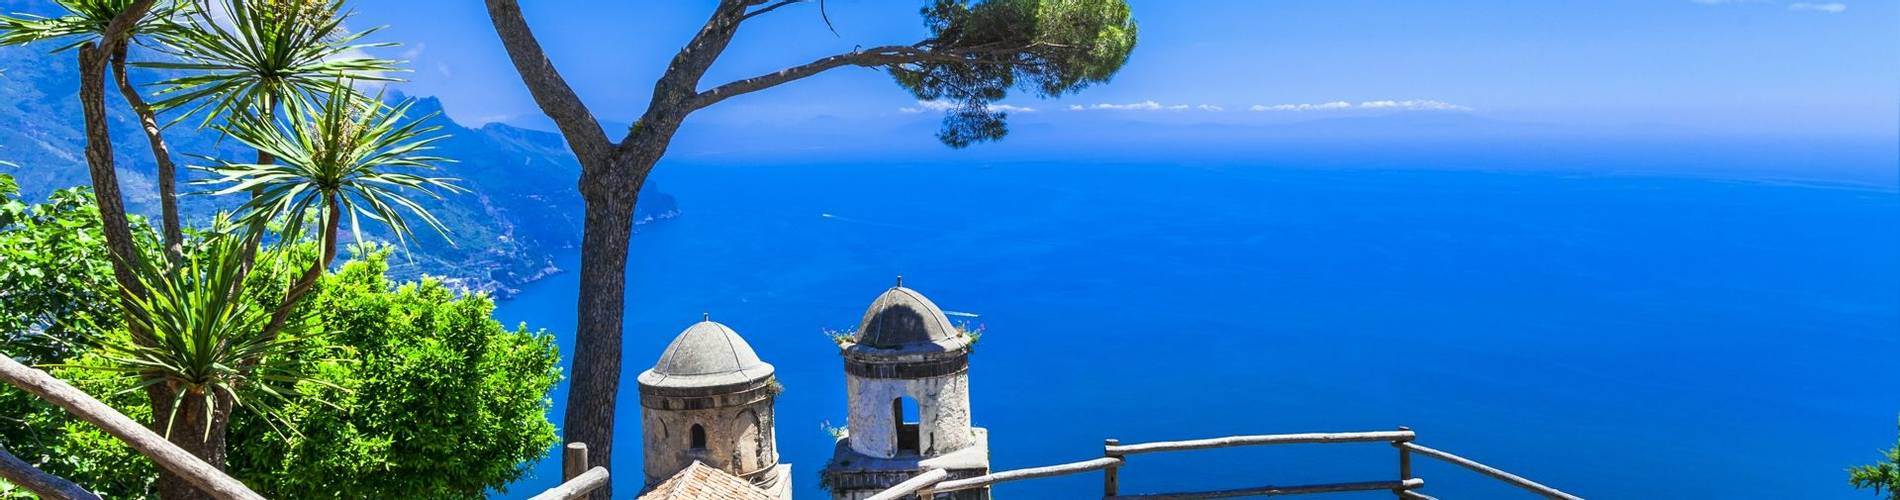 Amalfi coast.jpg